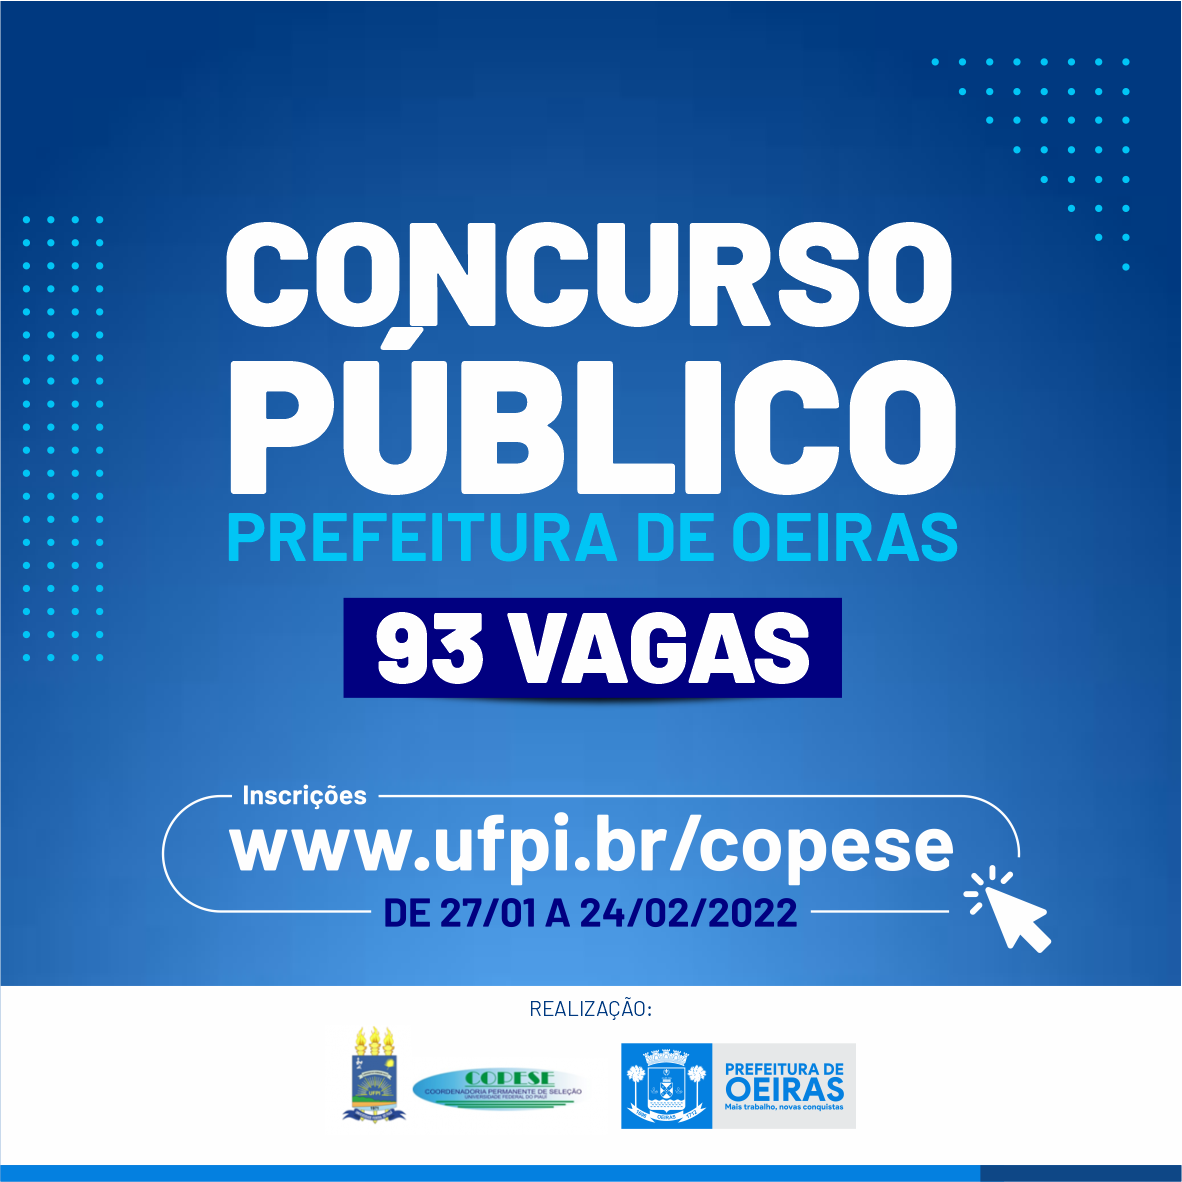 Prefeitura de Oeiras lança edital de concurso público com 93 vagas - Imagem 1